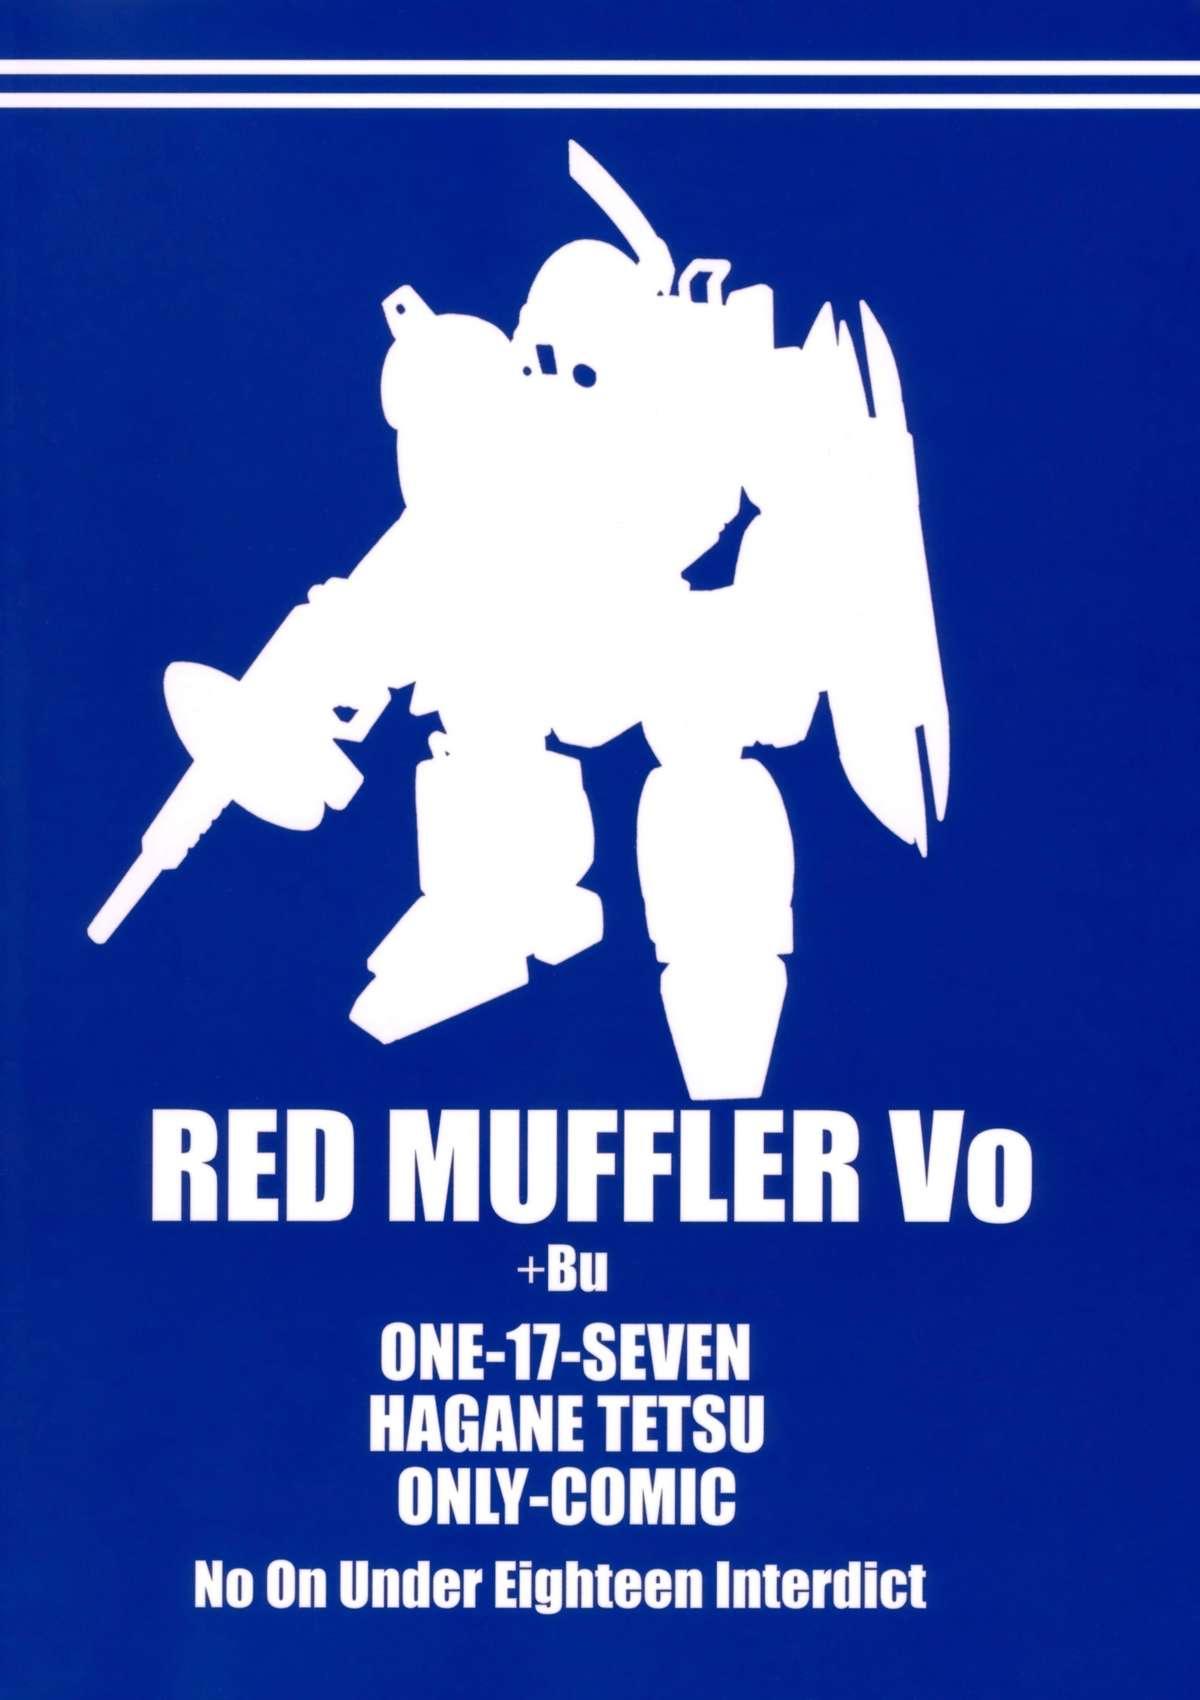 RED MUFFLER Vo 25